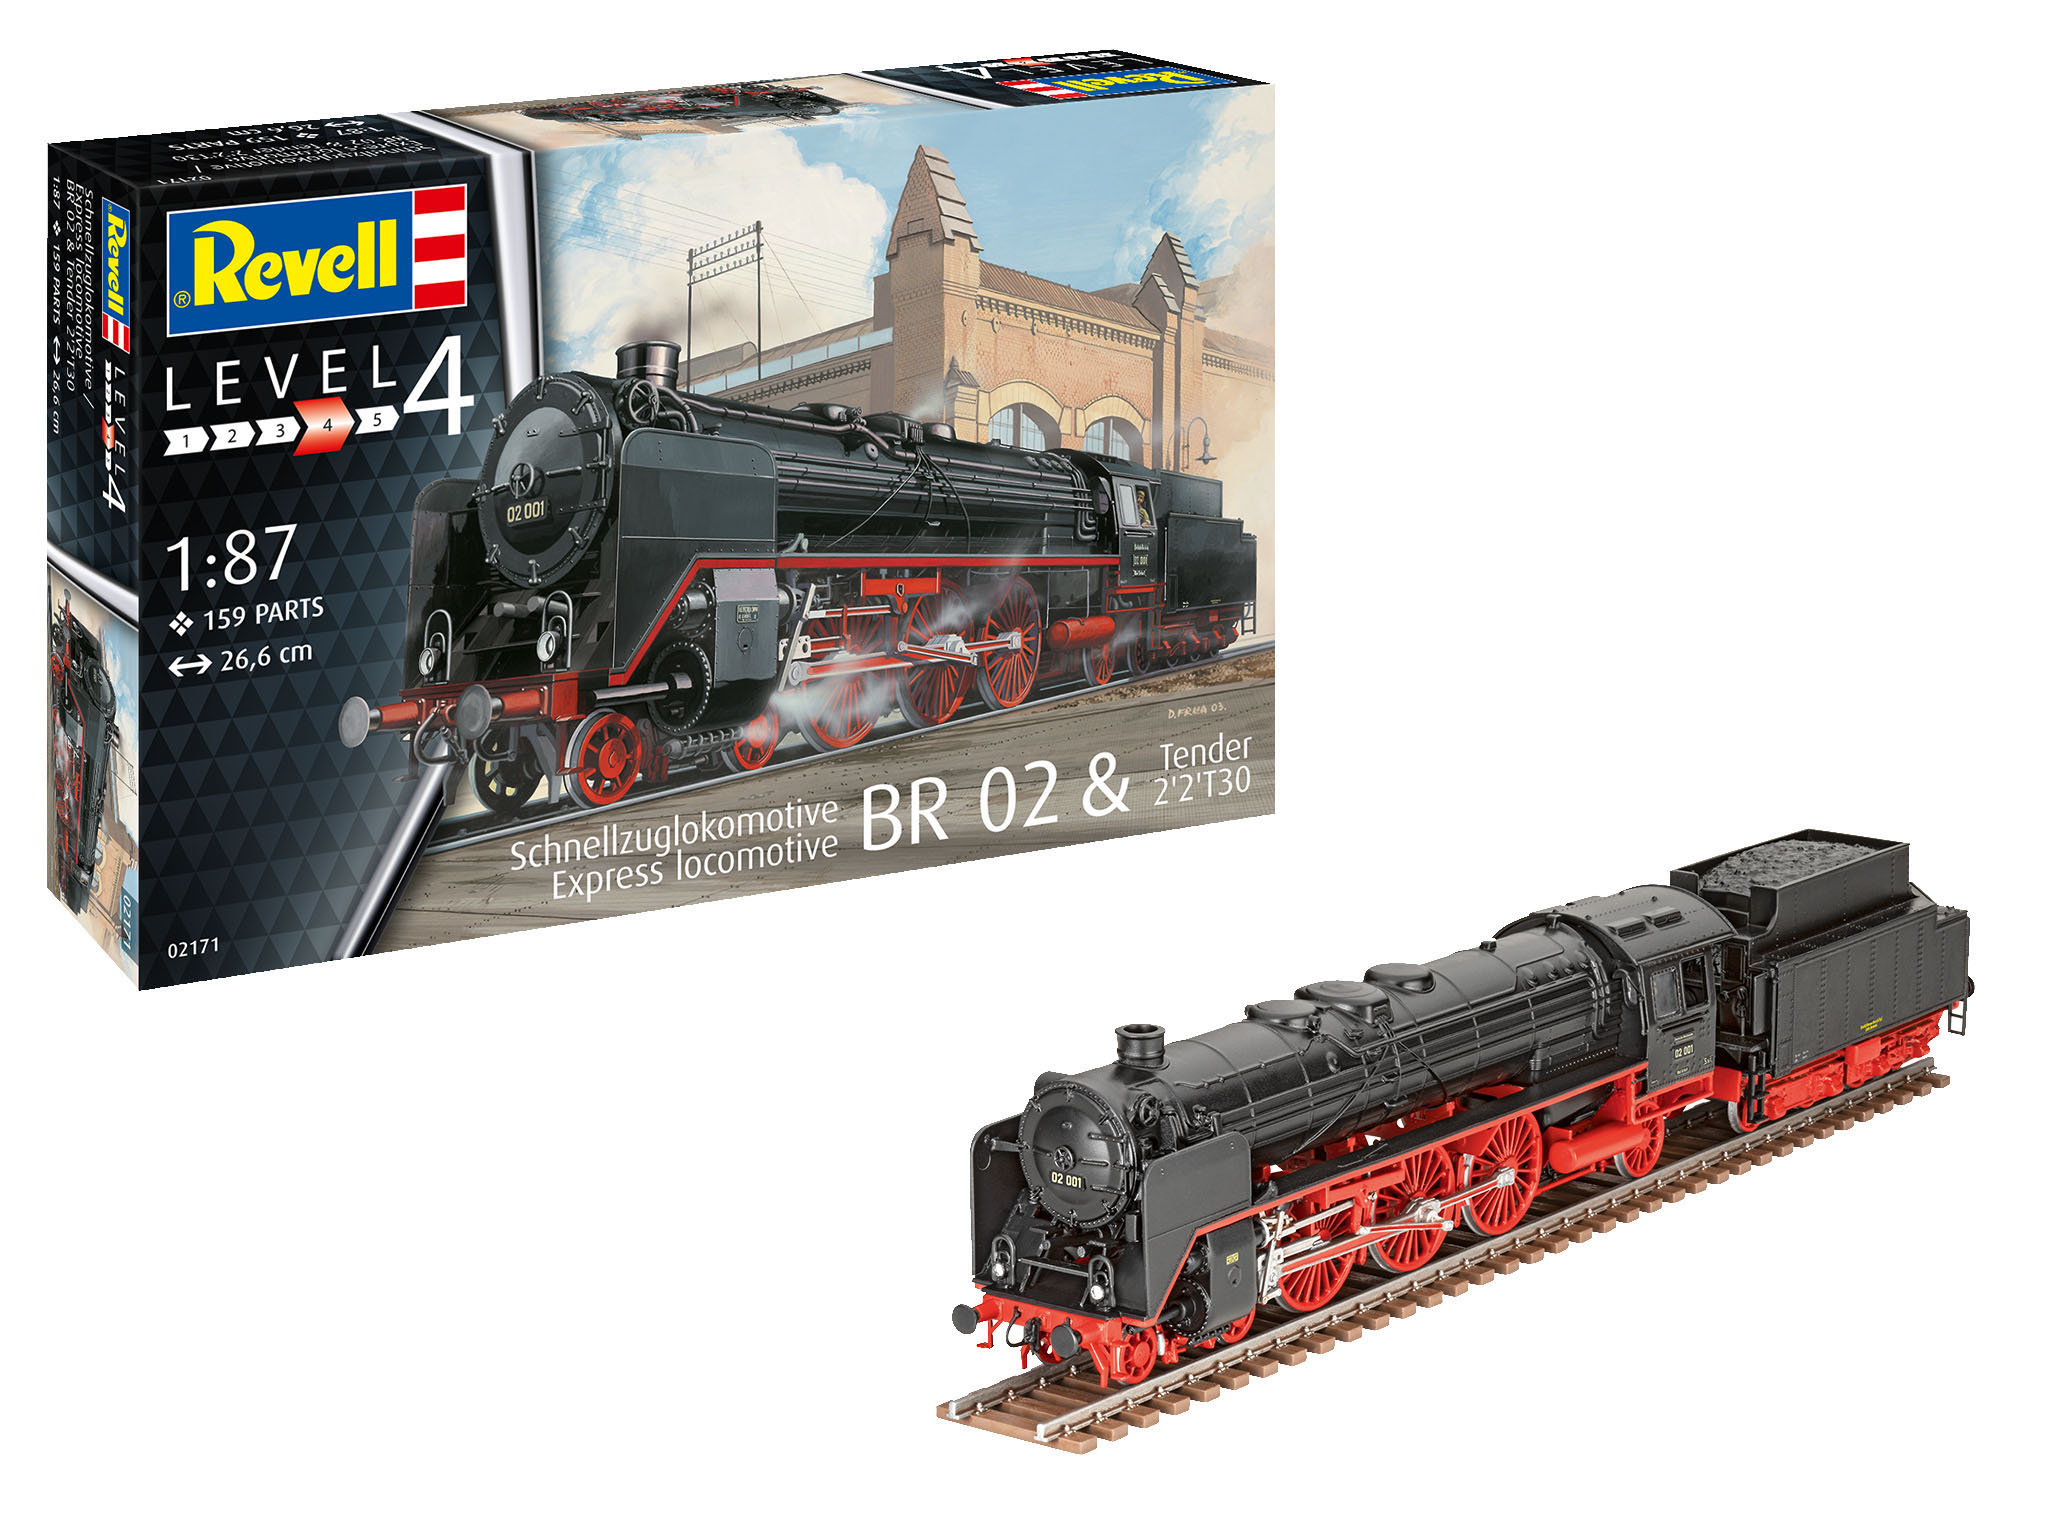 Revell-02171-1-Dampflokomotive-Baureihe-01-BR02-Tender-2-2-T30-Deutsche-Reichsbahn